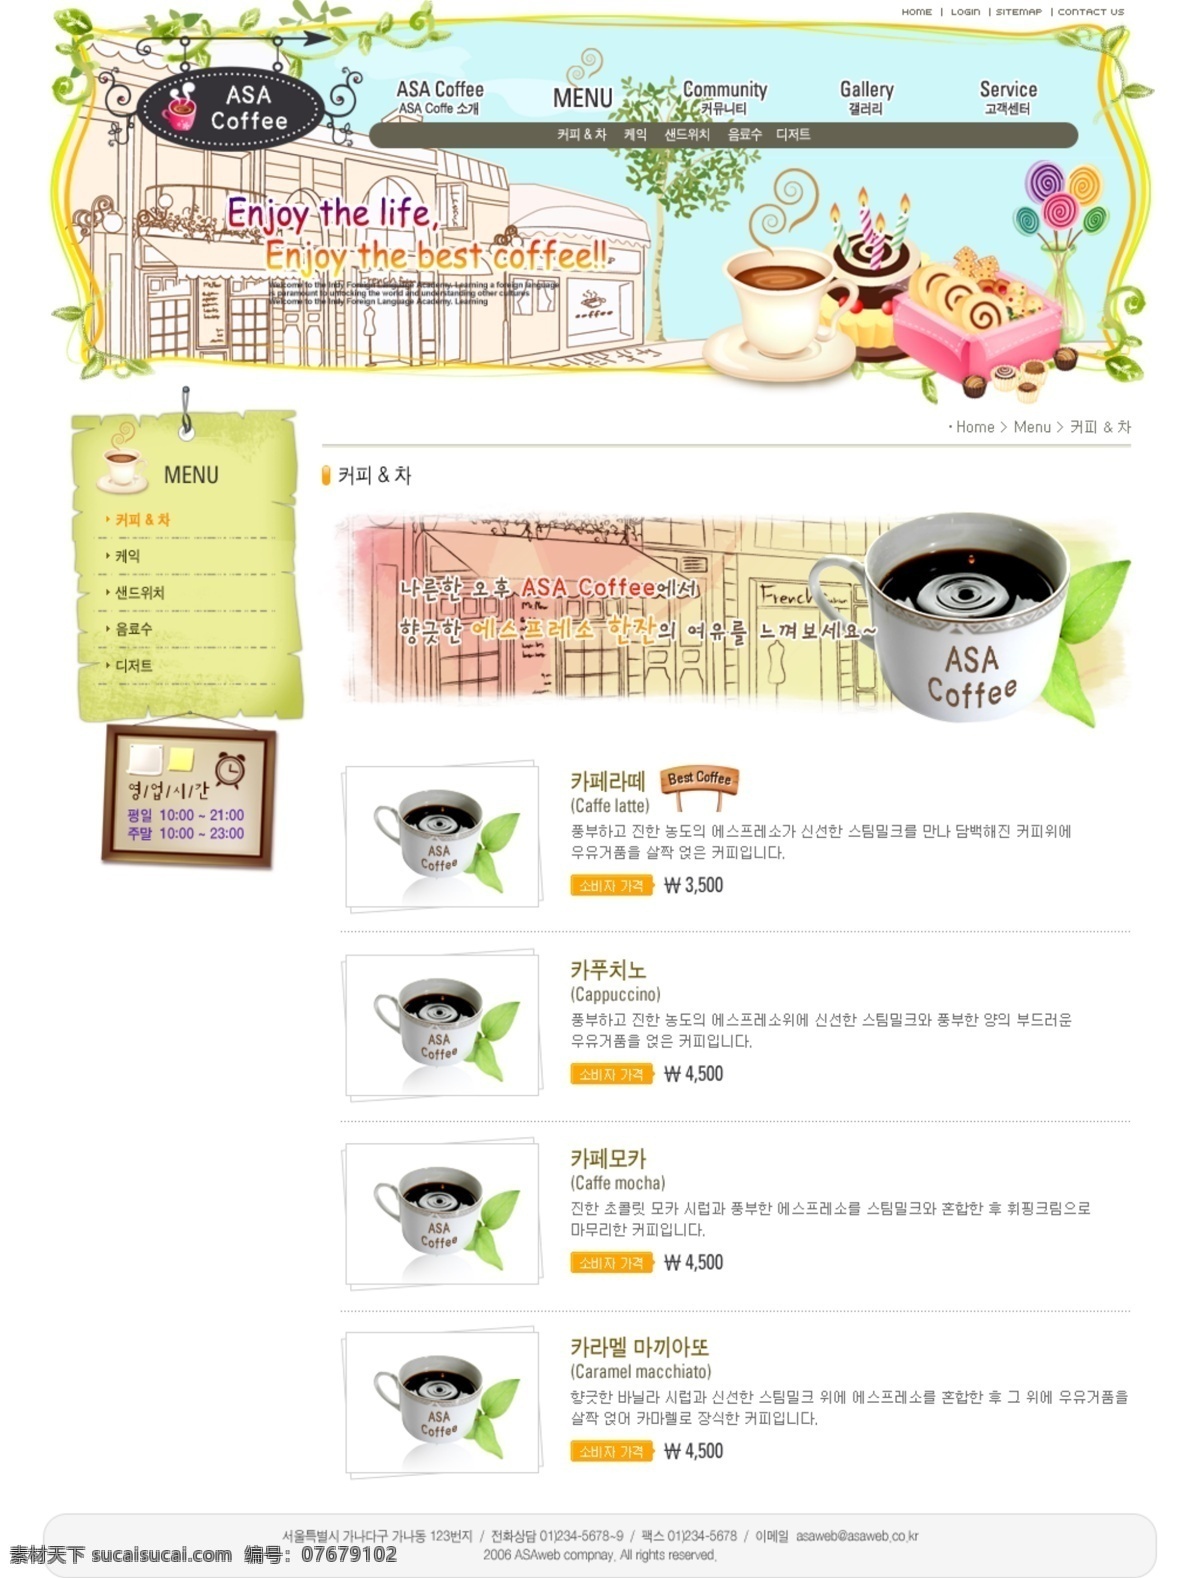 咖啡文化 交流网站 韩国 网页模板 网页素材